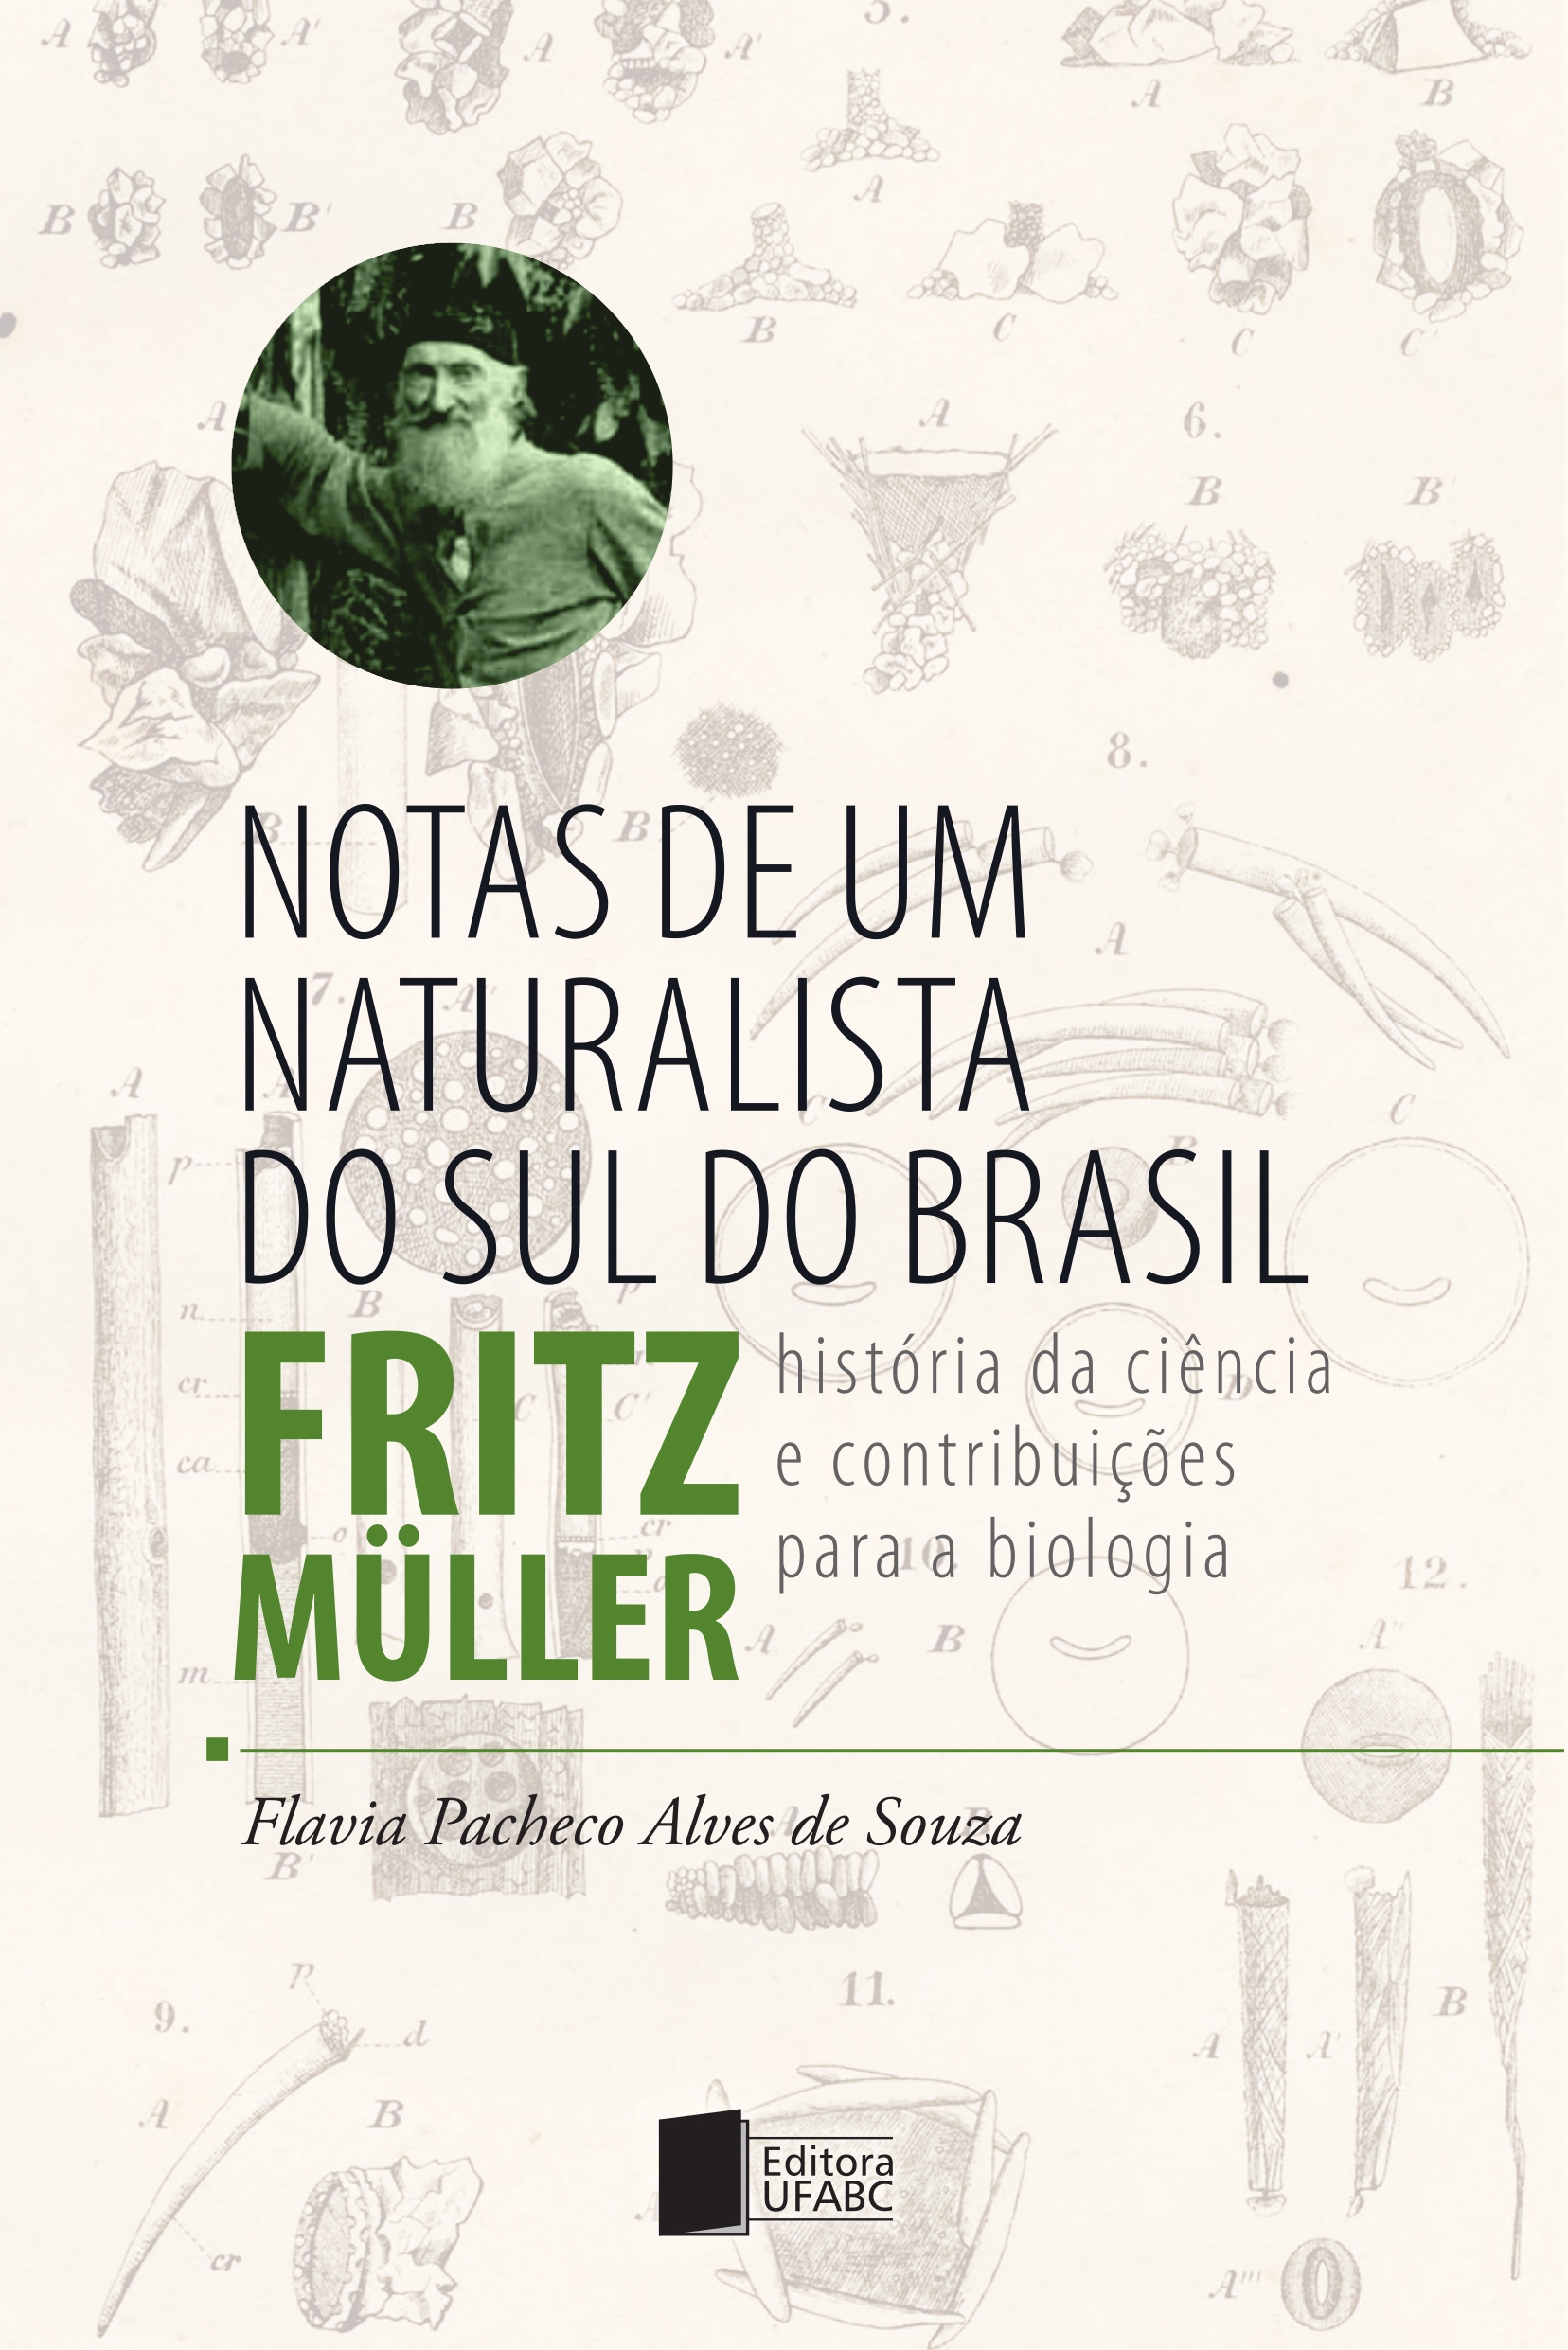 Cover of Notas de um Naturalista do Sul do Brasil - Fritz Müller